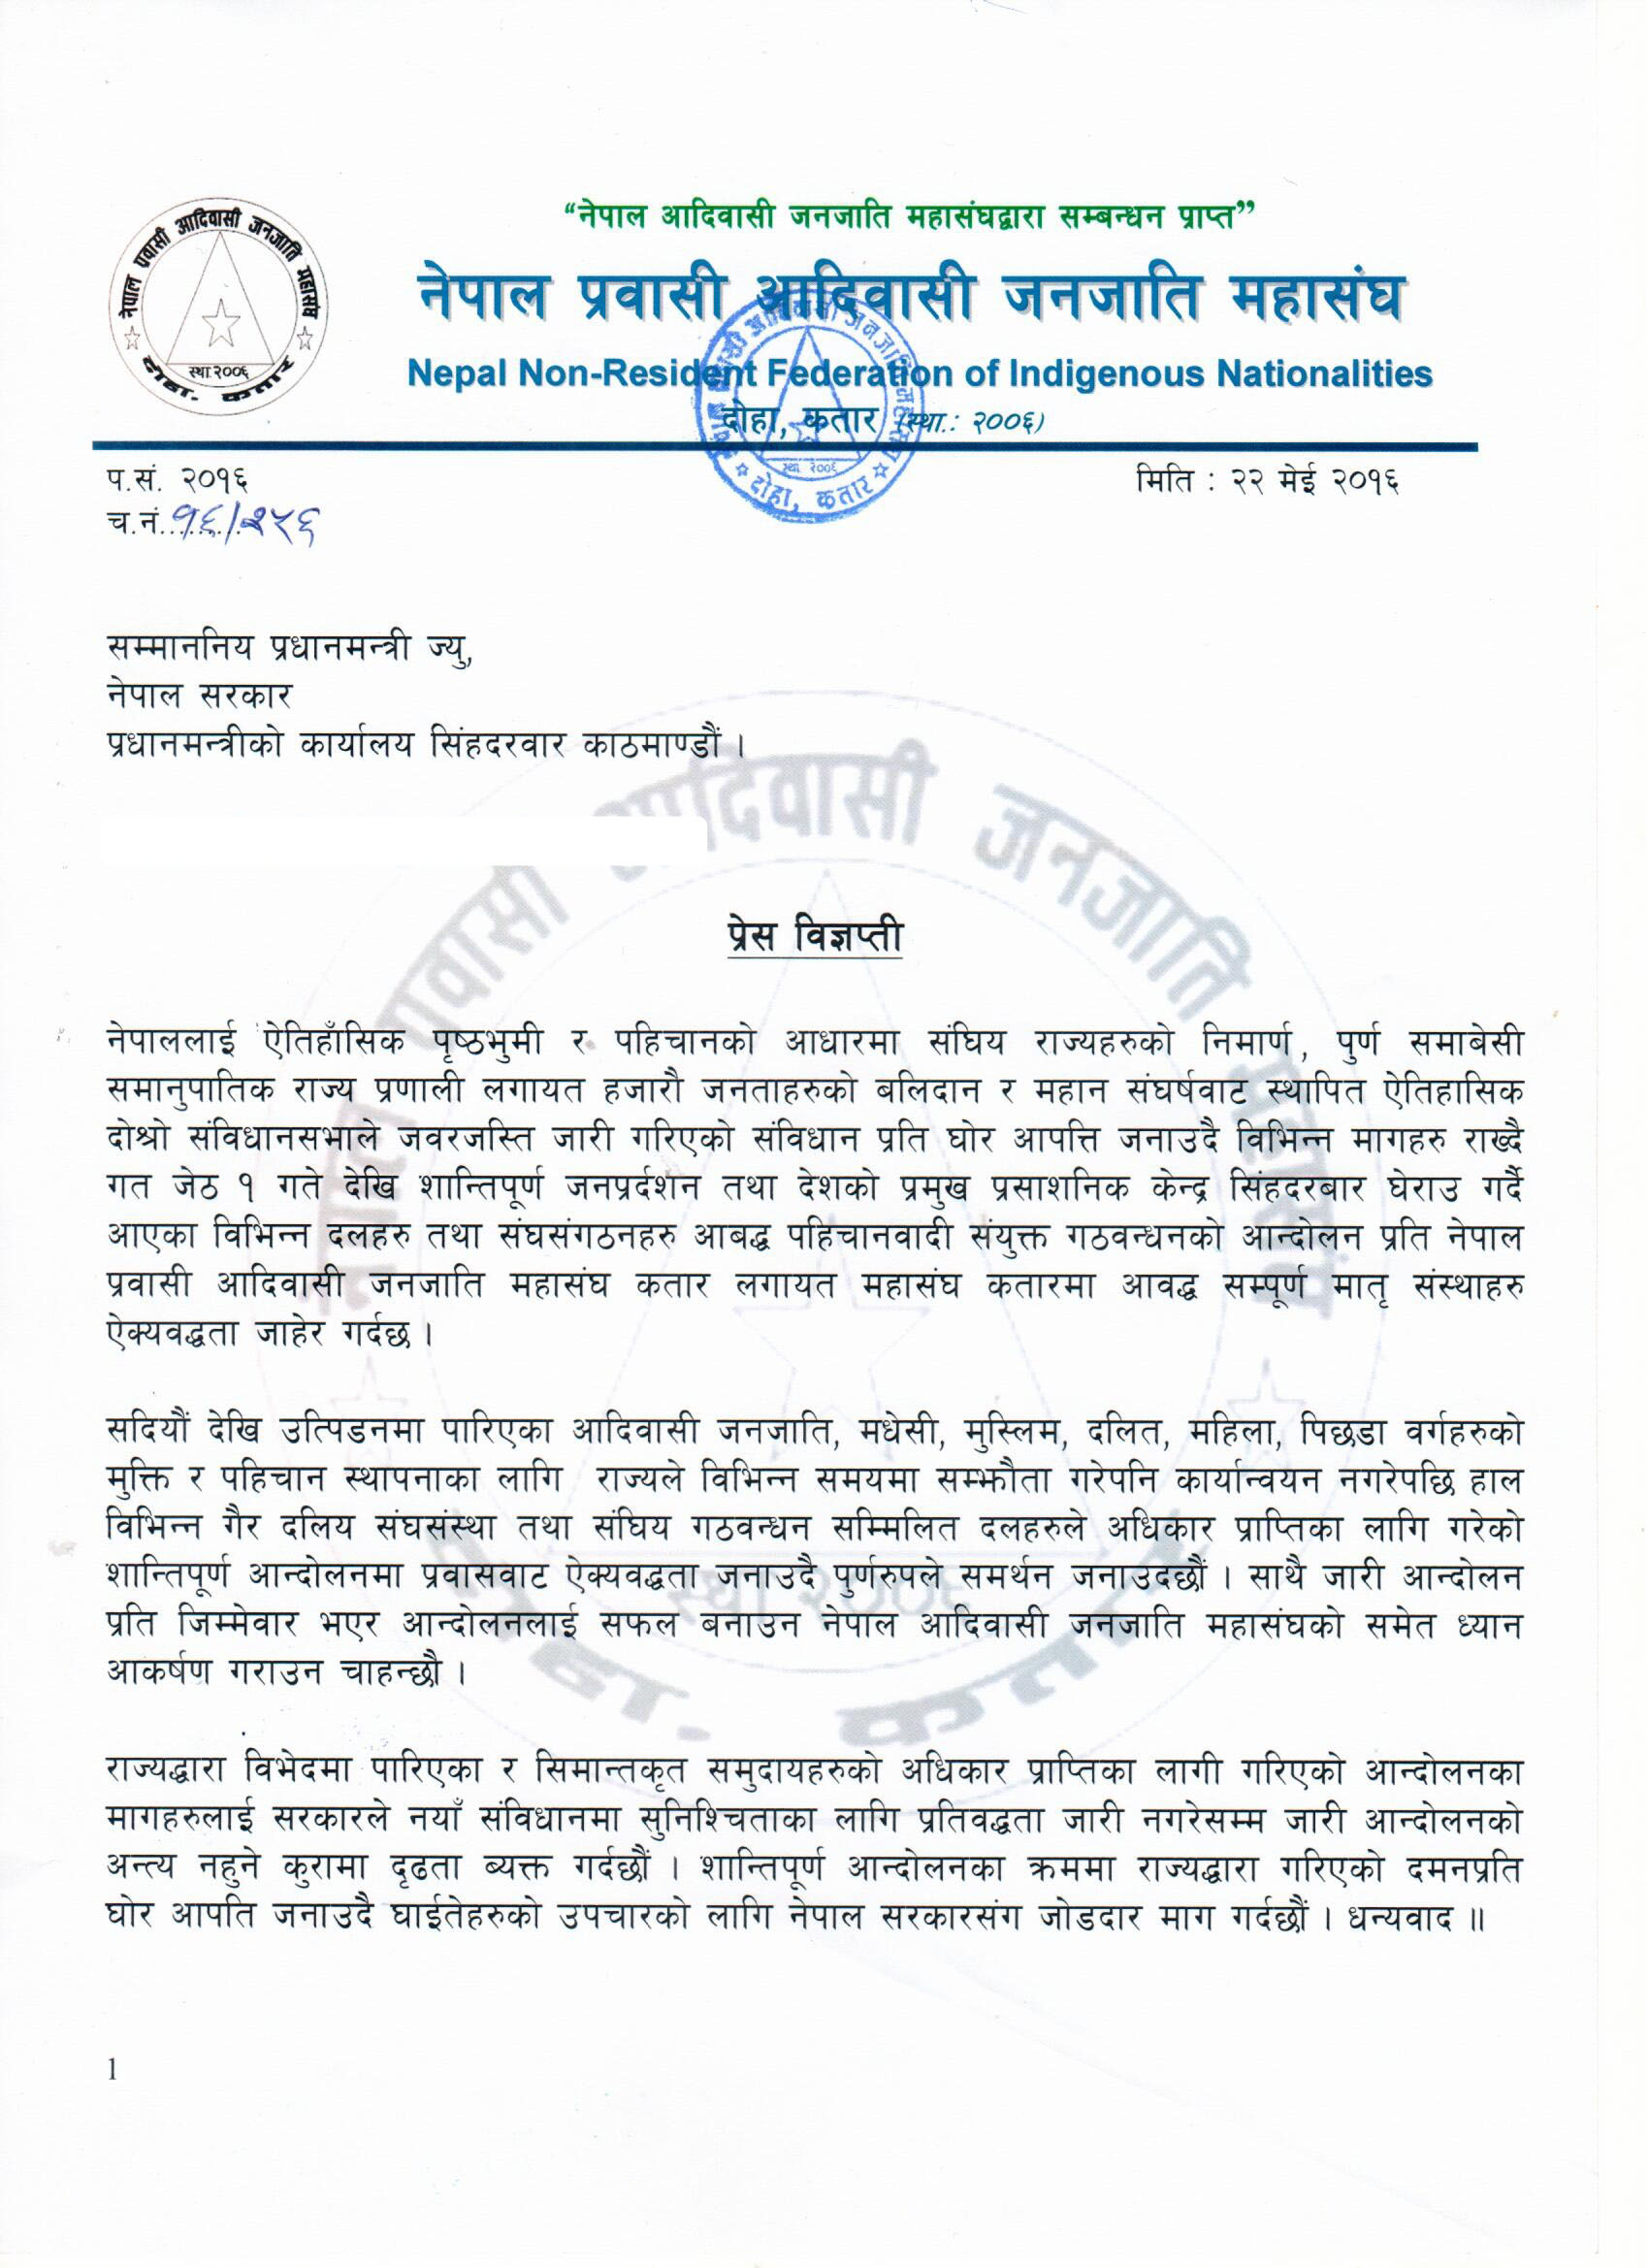 नेपाल प्रवासी अादिवासी जनजाति महासंघको प्रेस बिज्ञप्ति